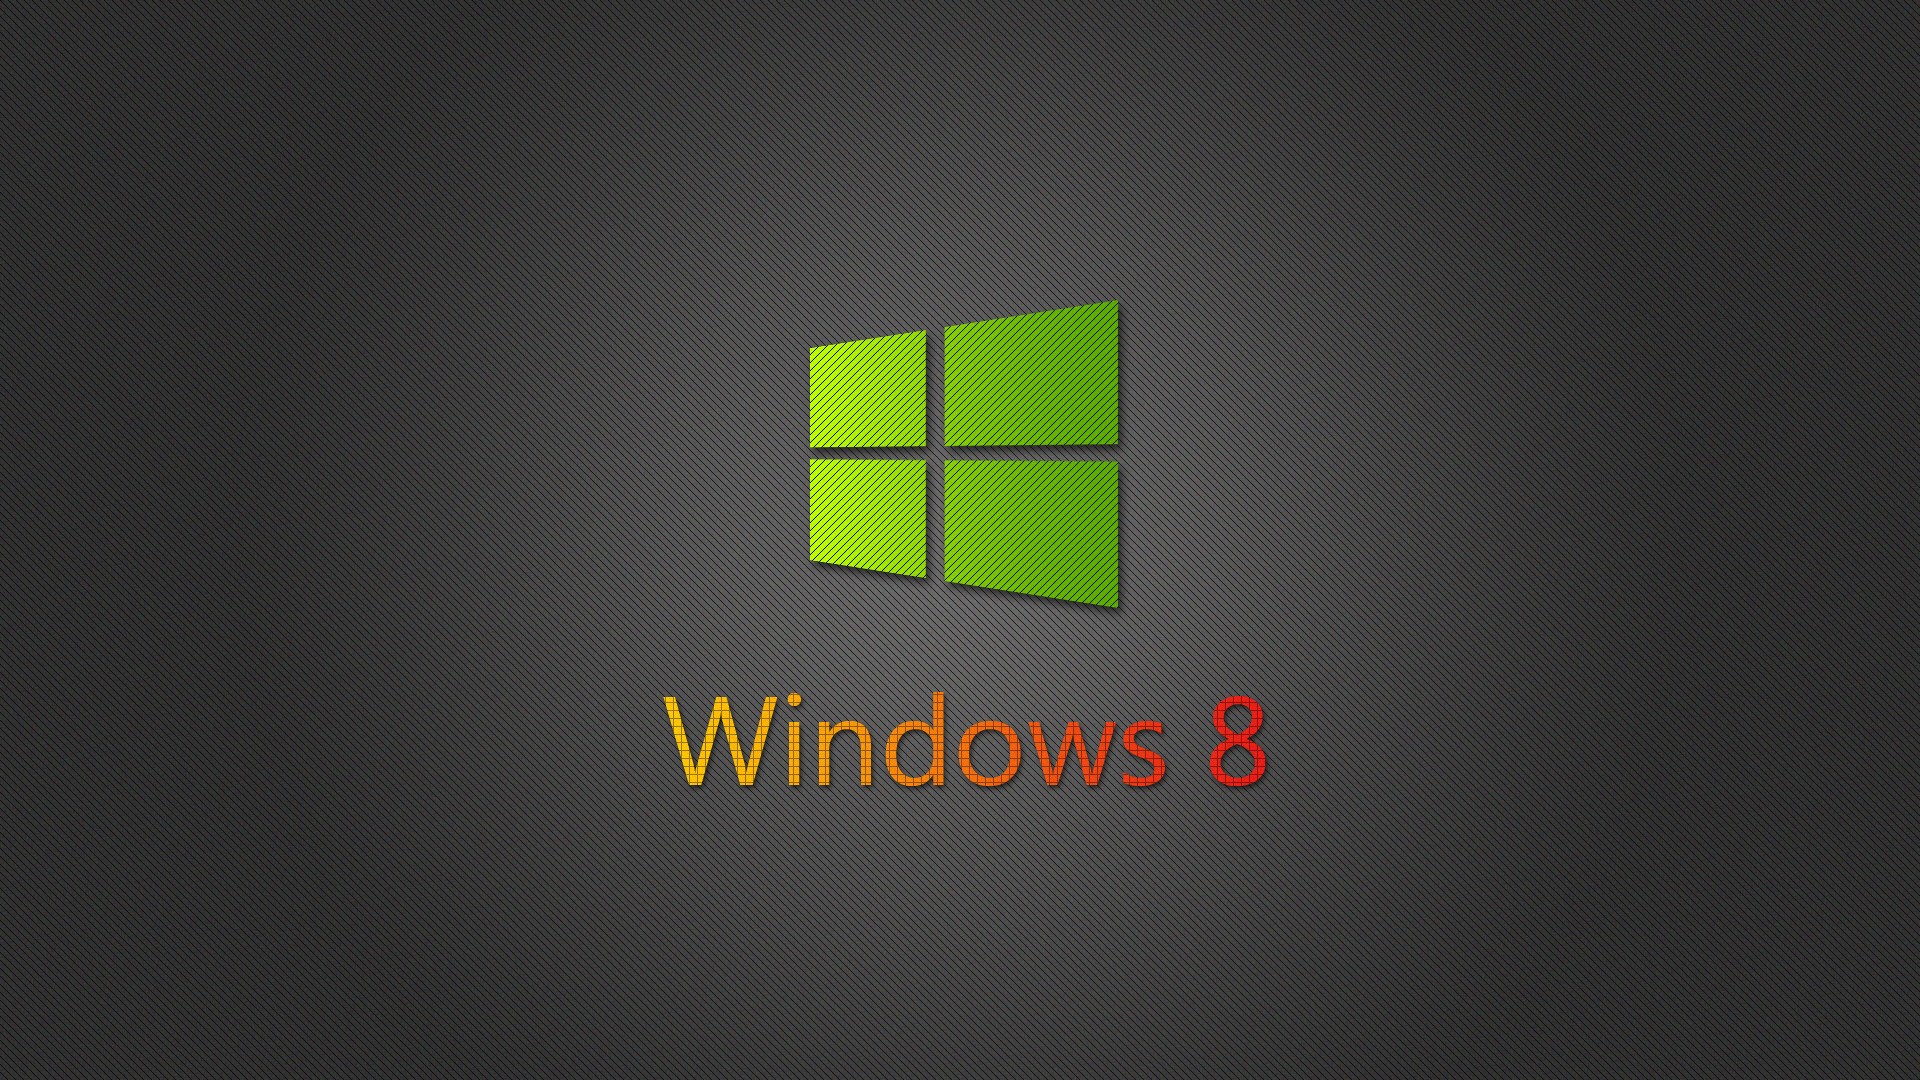 Windows 8 Full HD Wallpaper and Hintergrund | 1920x1080 | ID:292680 Full Hd Wallpapers For Windows 8 1920x1080